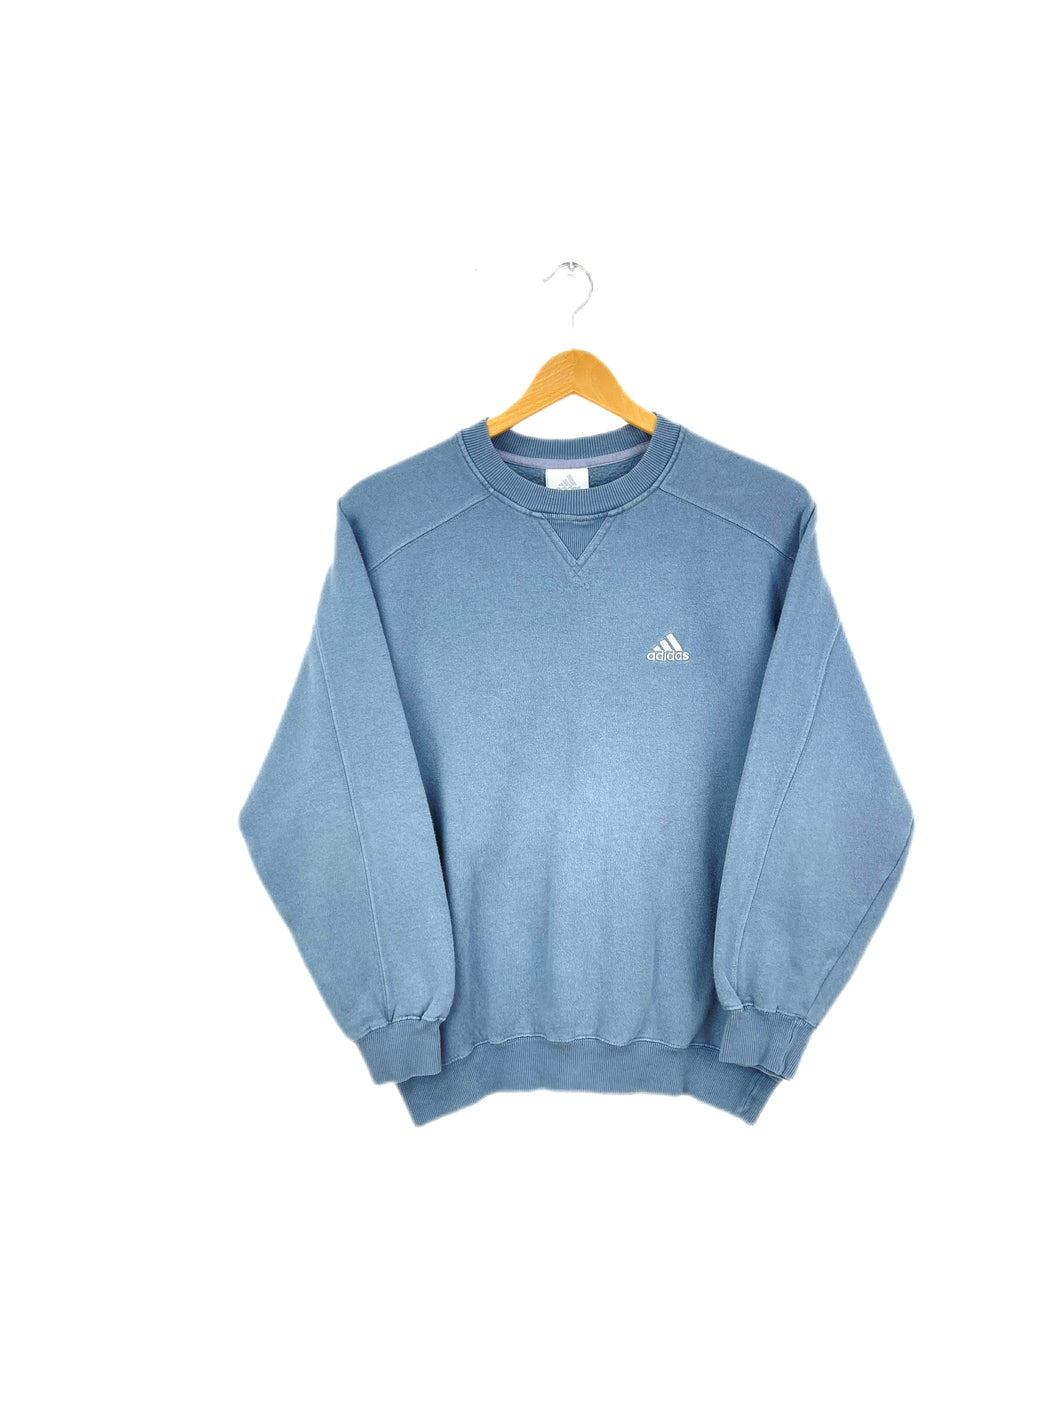 Adidas Sweatshirt - XSmall